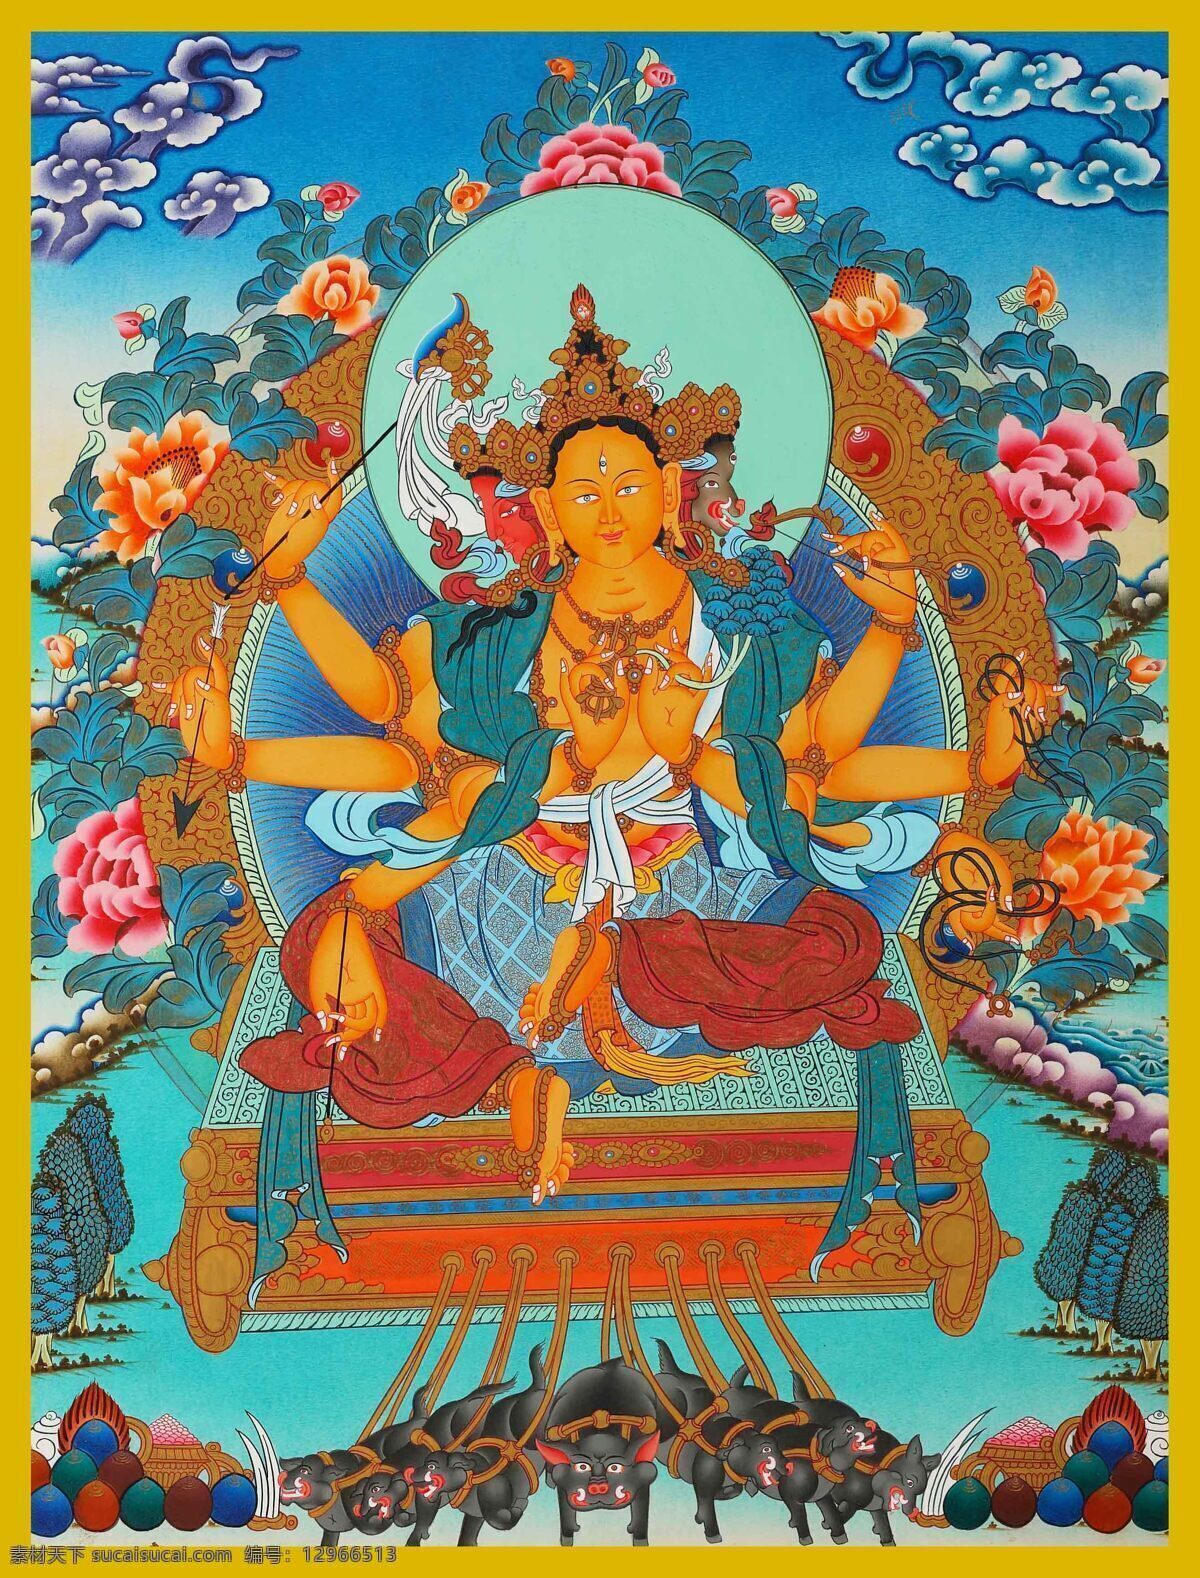 光明佛母 摩利支 摩利支提婆 伟瑟间玛 积光天母 佛母 护法 菩萨 西藏 密宗 佛 佛教 藏传 宗教信仰 文化艺术